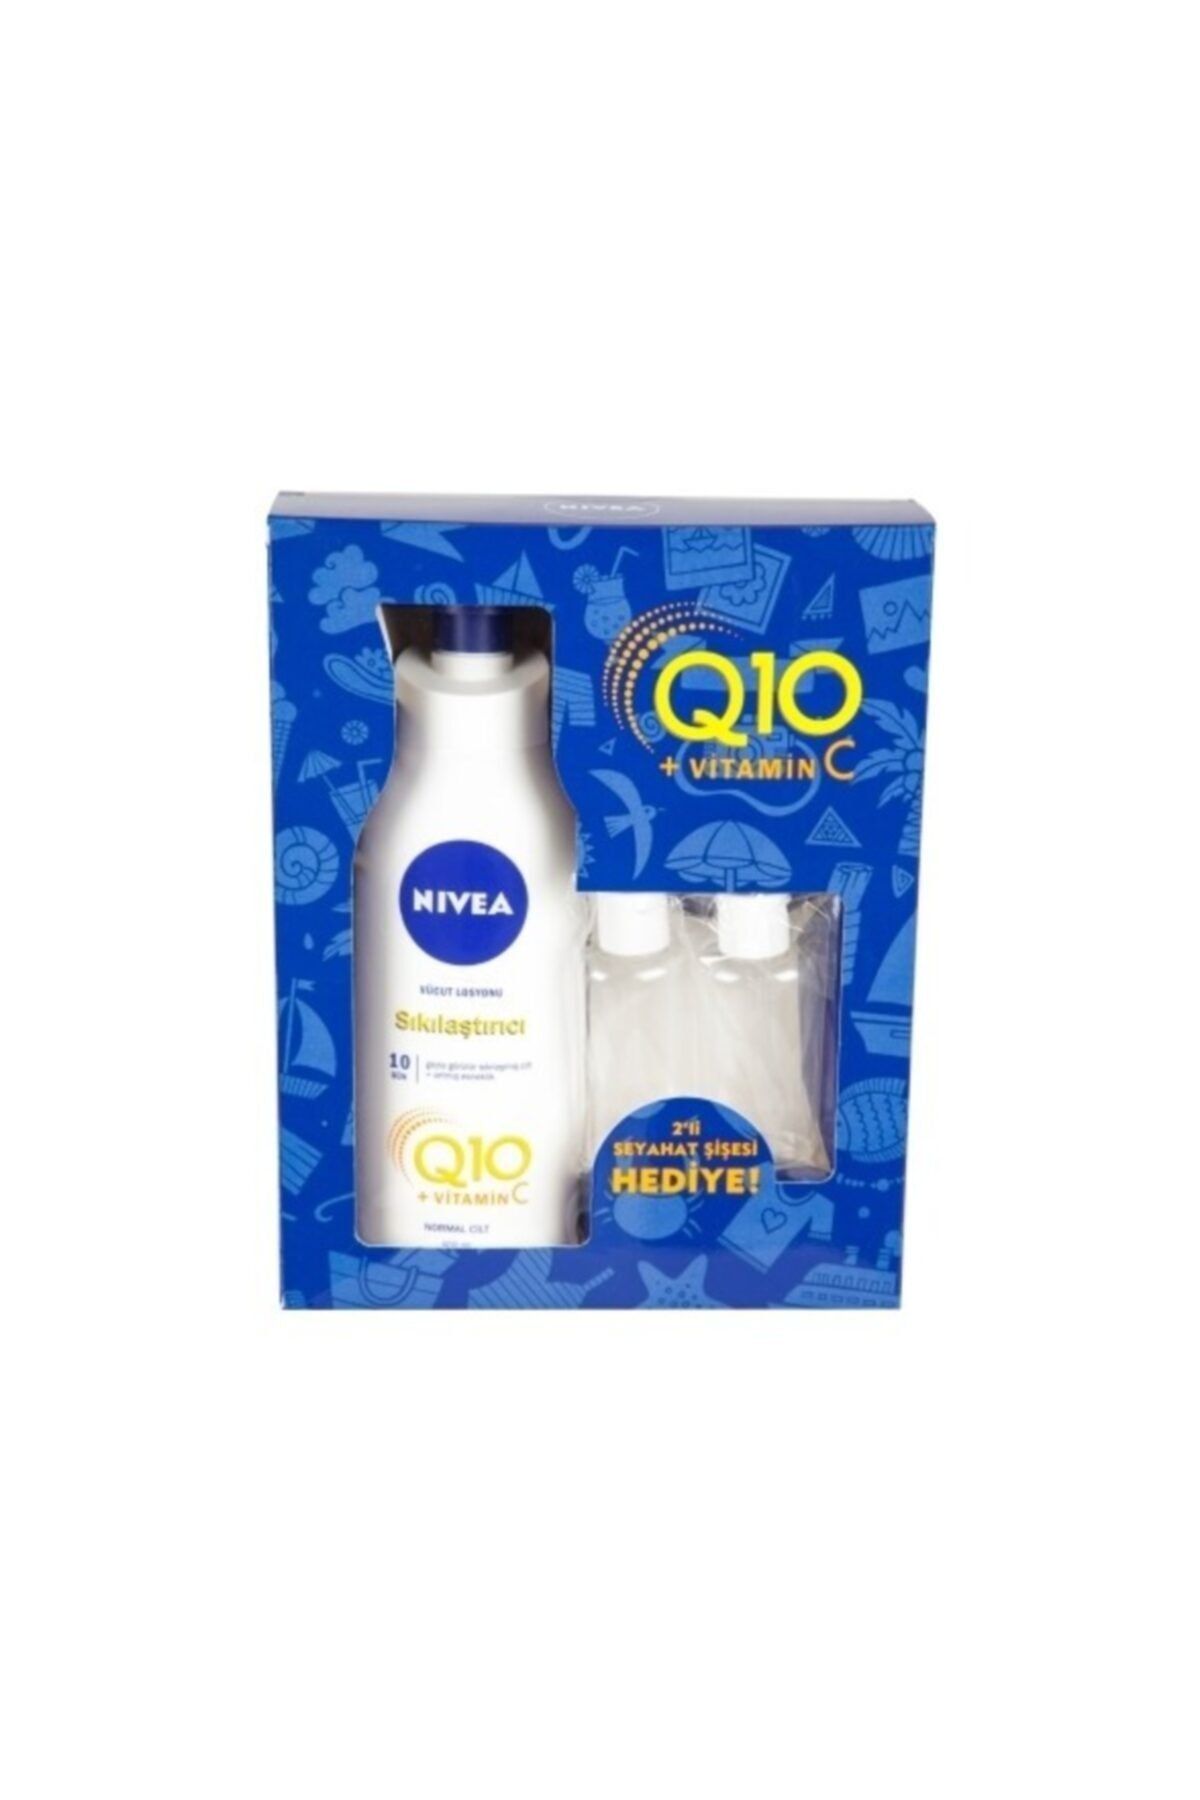 NIVEA Q10 + Vitamin C Sıkılaştırıcı Vücut Losyonu 400ml (+ 2'li Seyahat Şişesi)